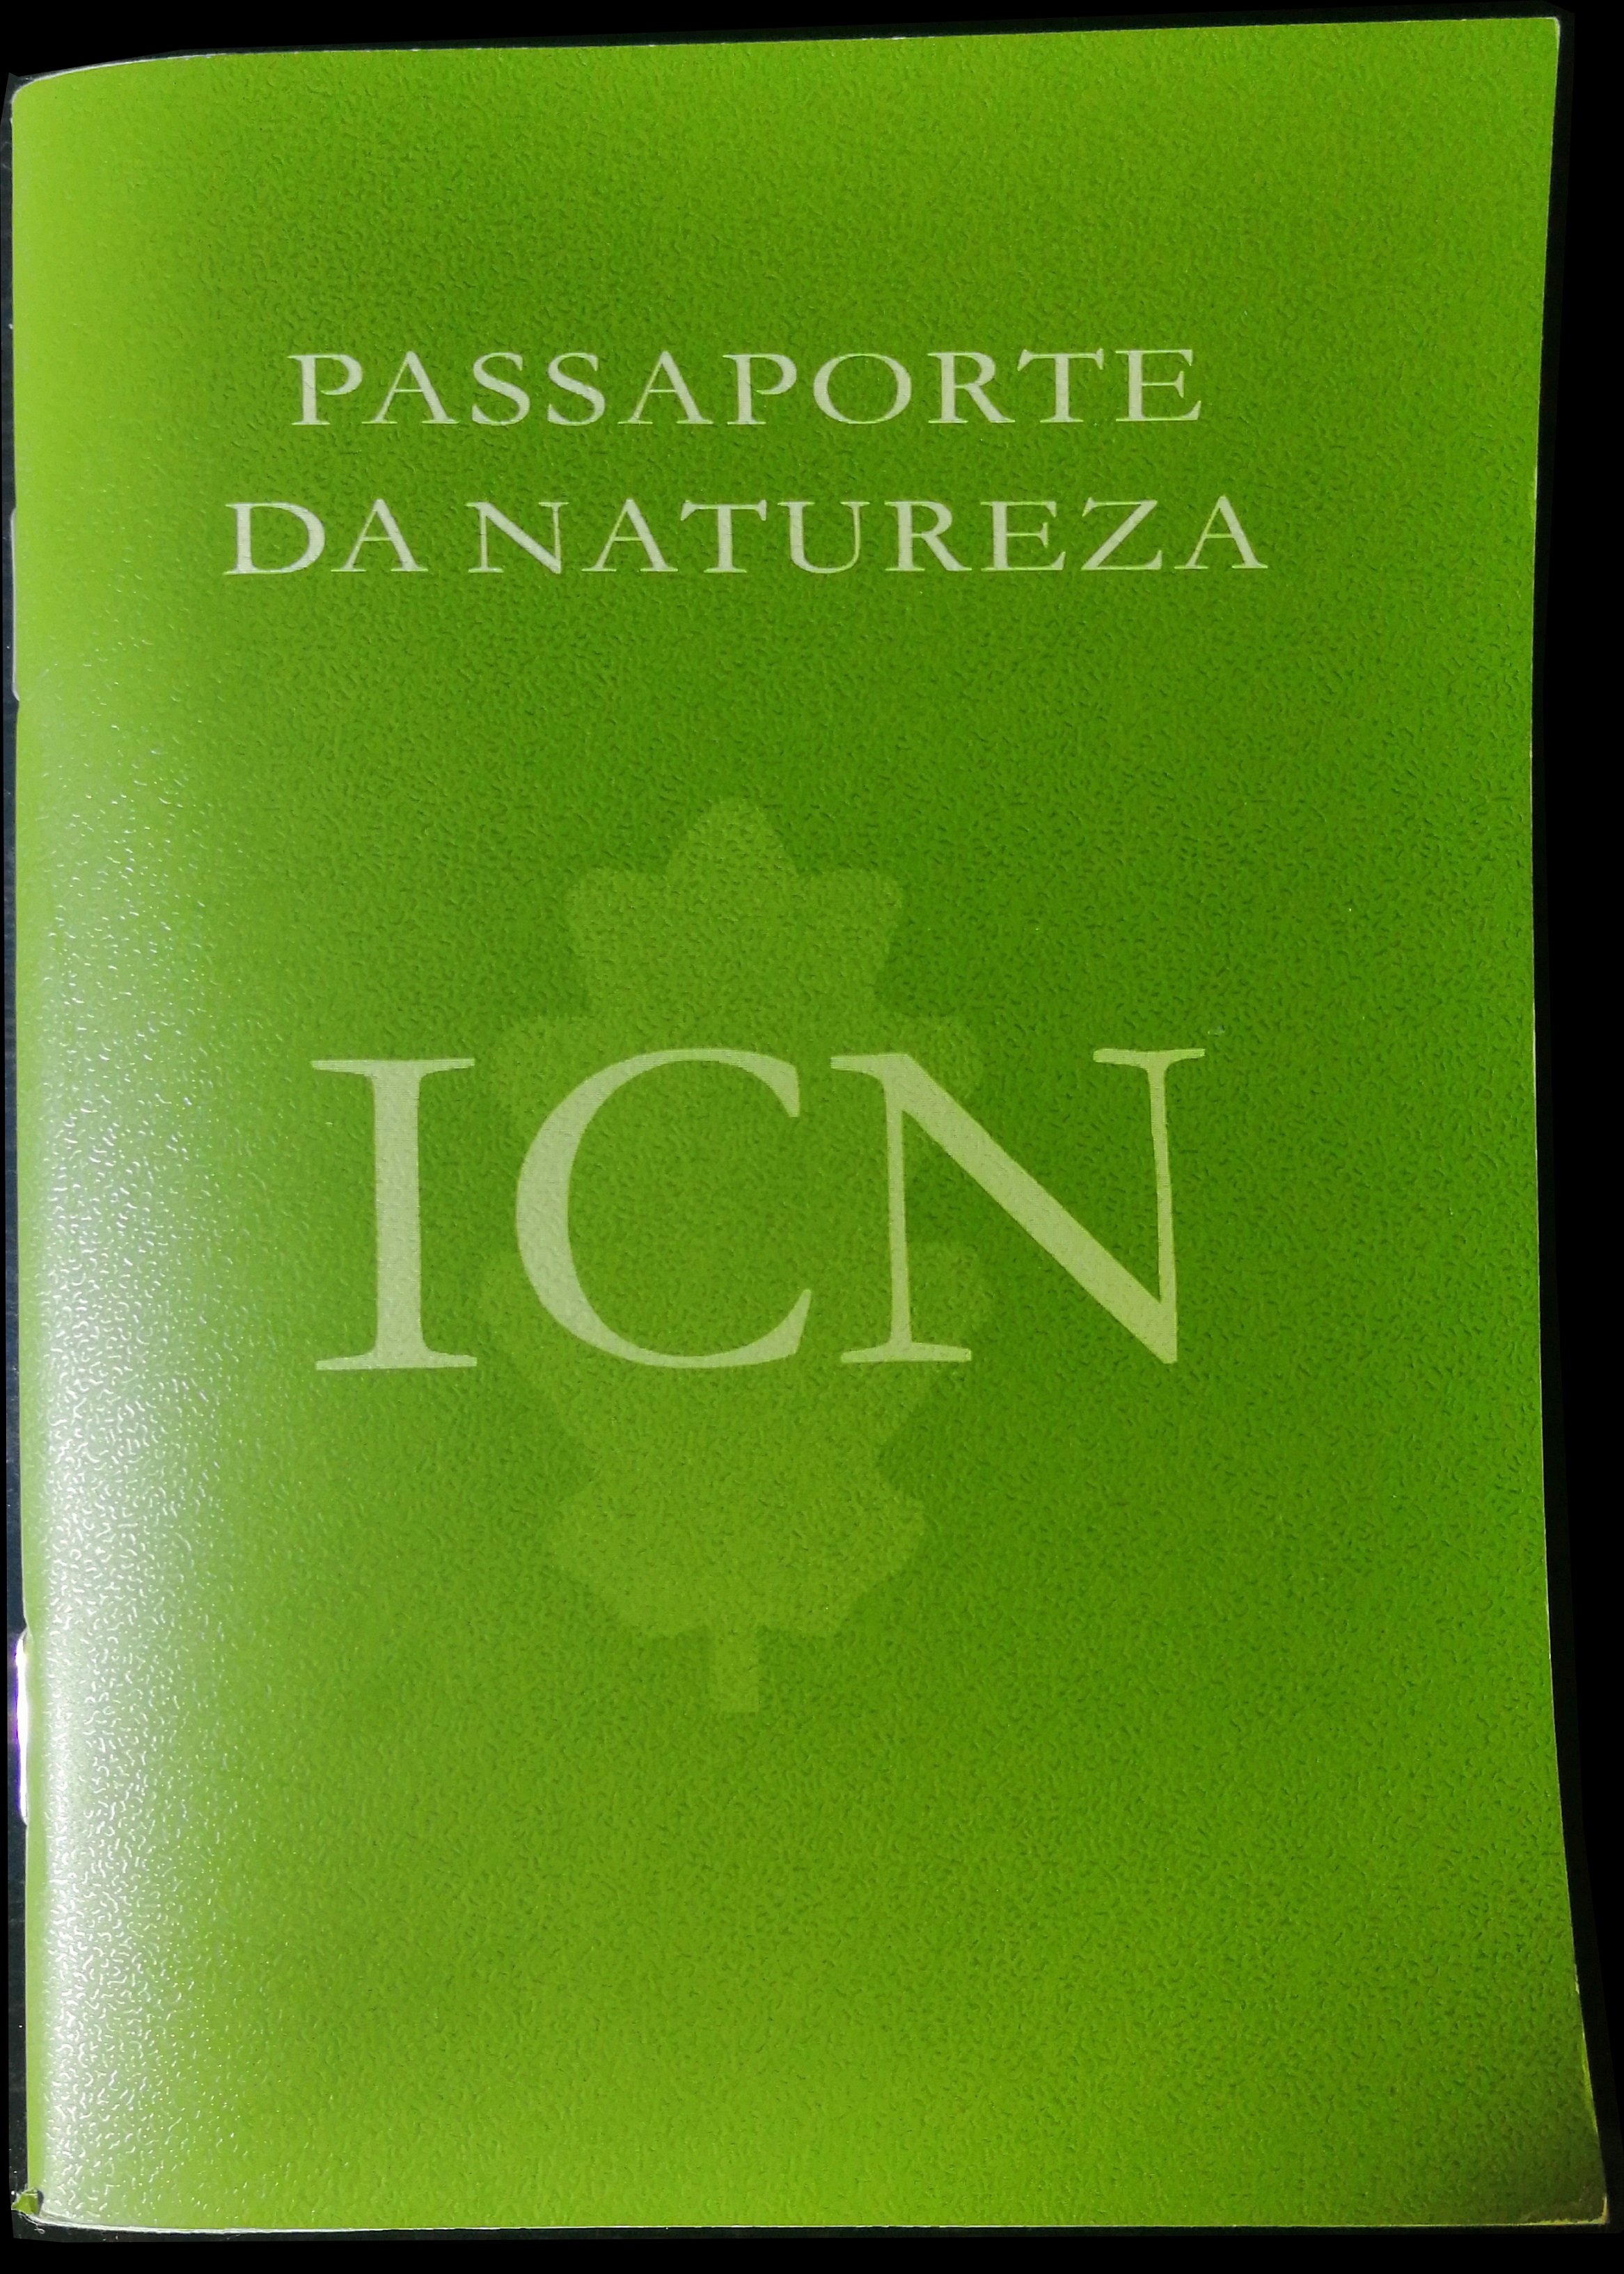 Passaporte da Natureza